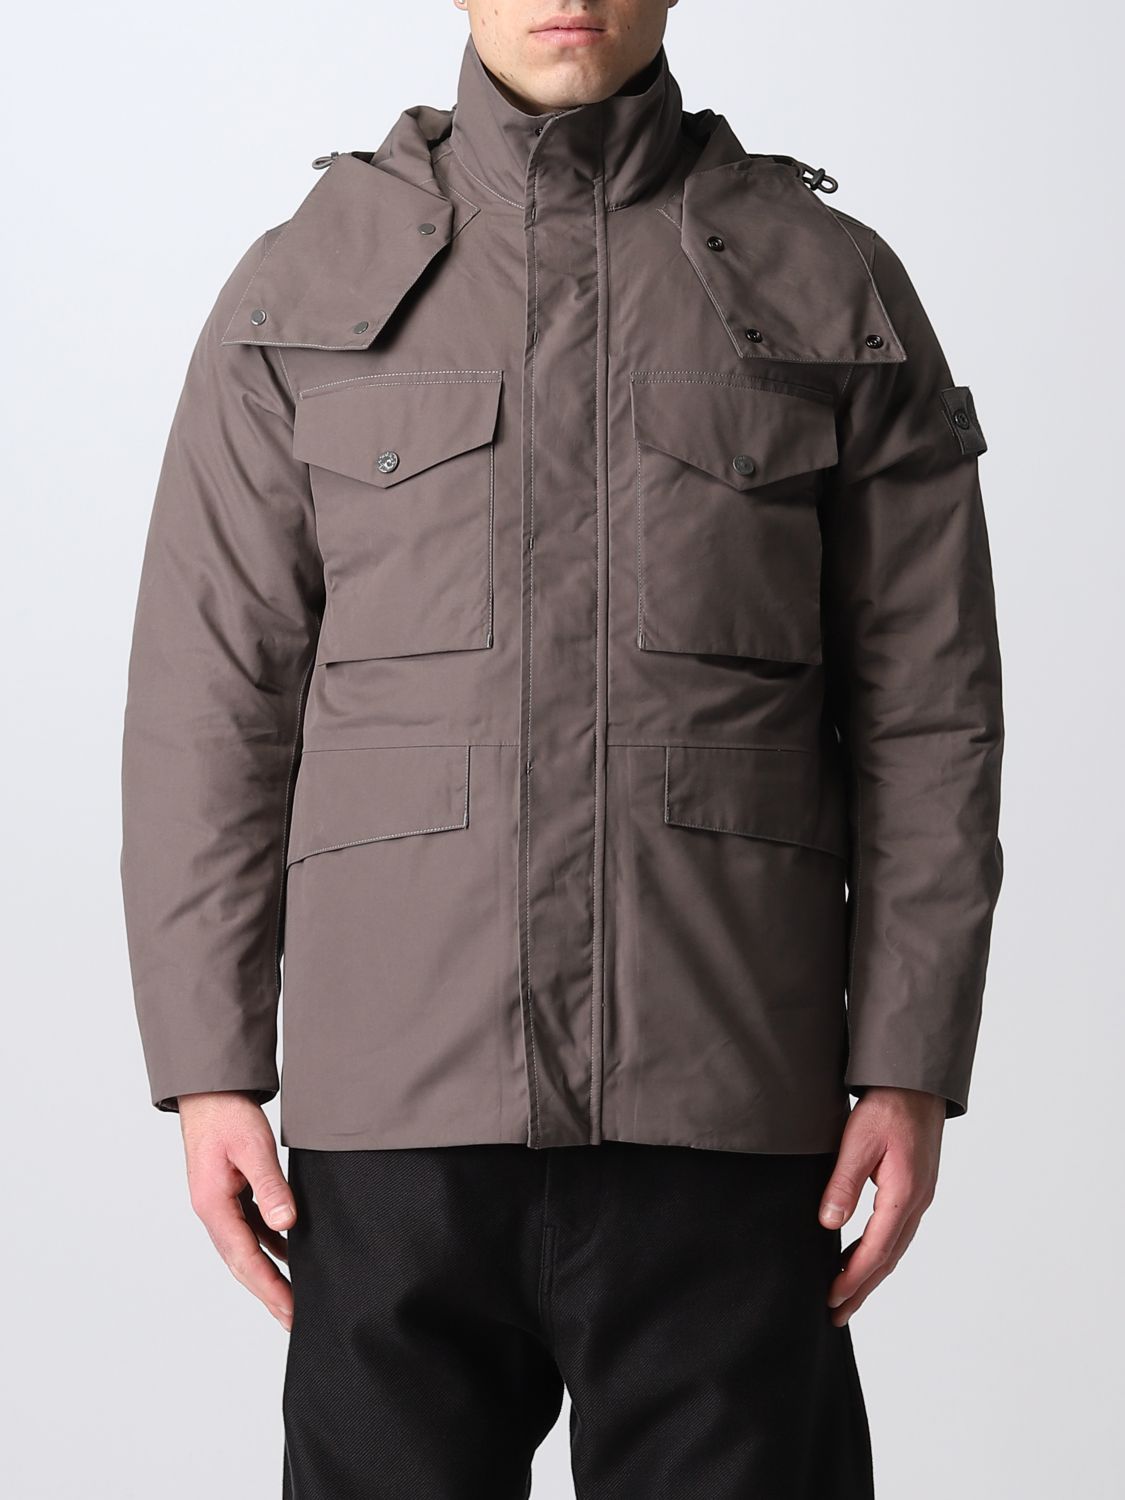 STONE ISLAND: hooded jacket - Grey | Stone Island jacket 437F1 online ...